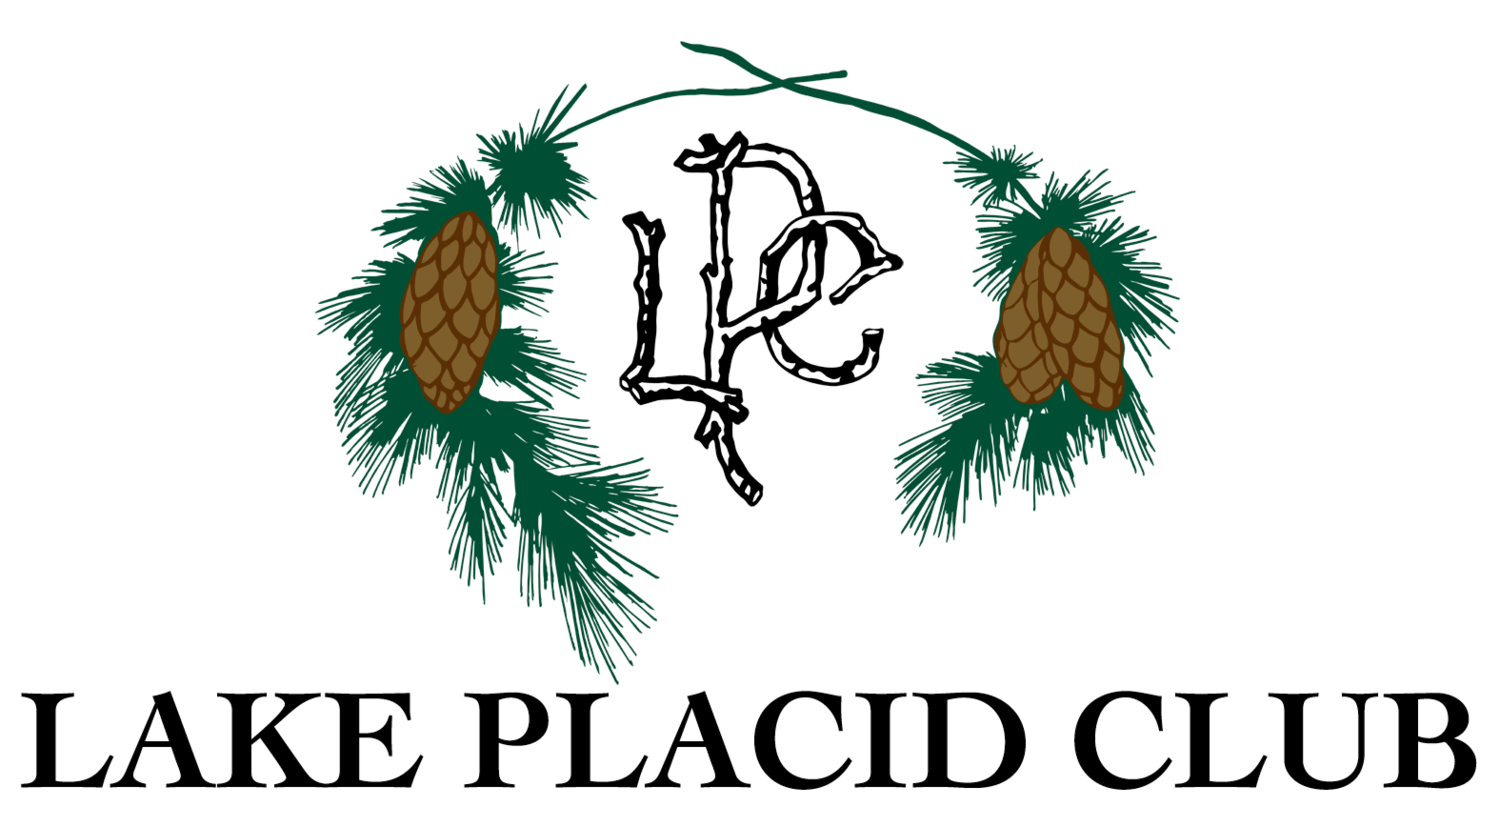 Lake Placid Club